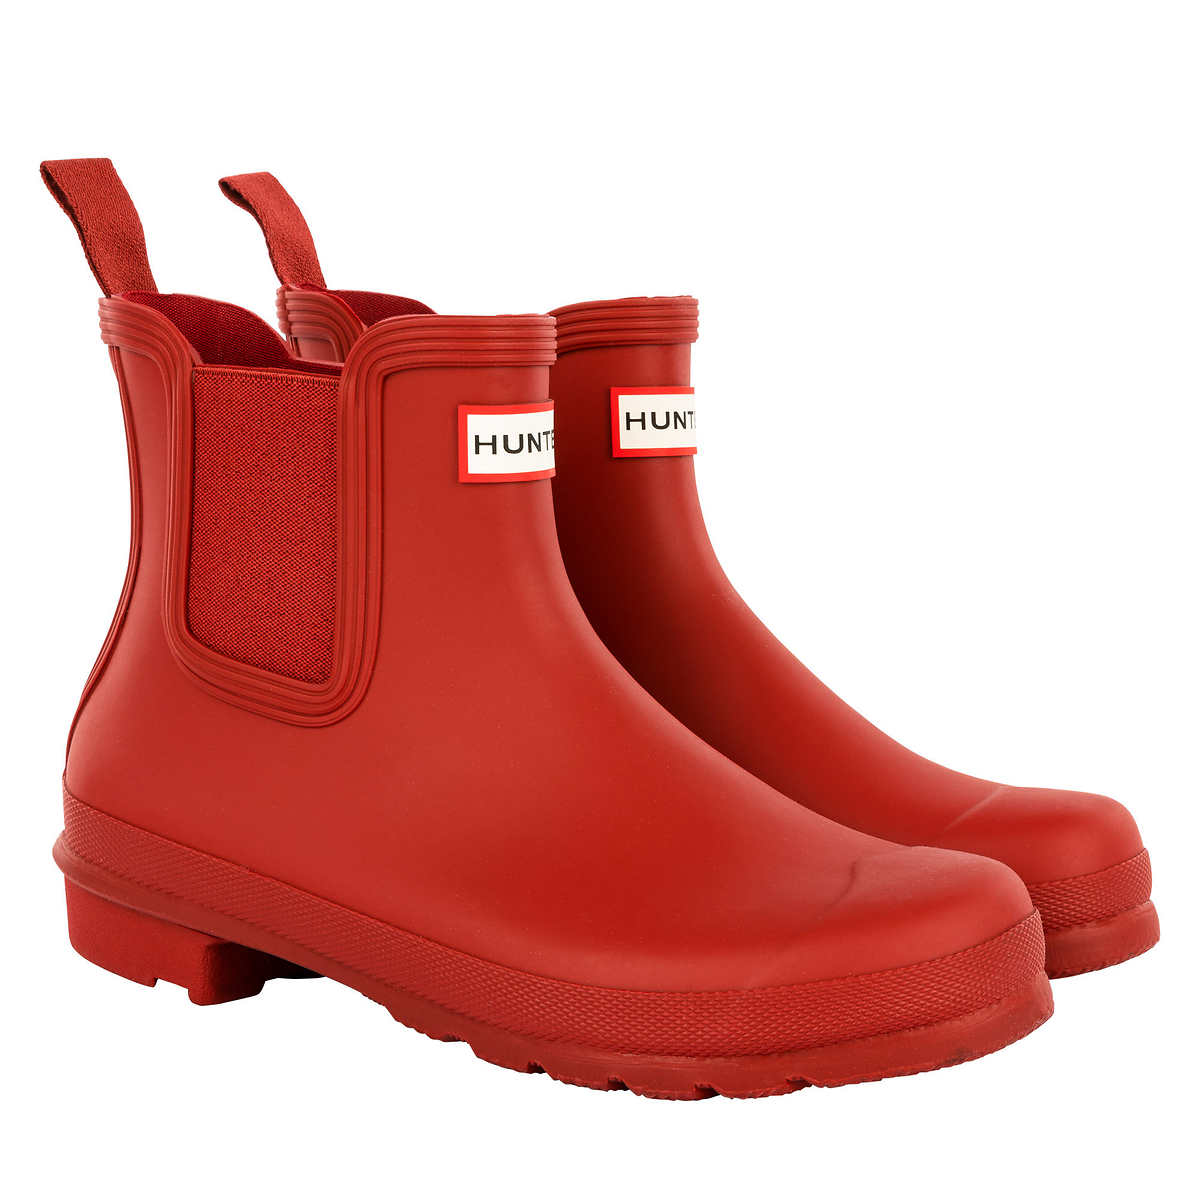 Hunter-bottes-mi-hautes-caoutchouc-femme-original-chelsea-boots-rouge-red